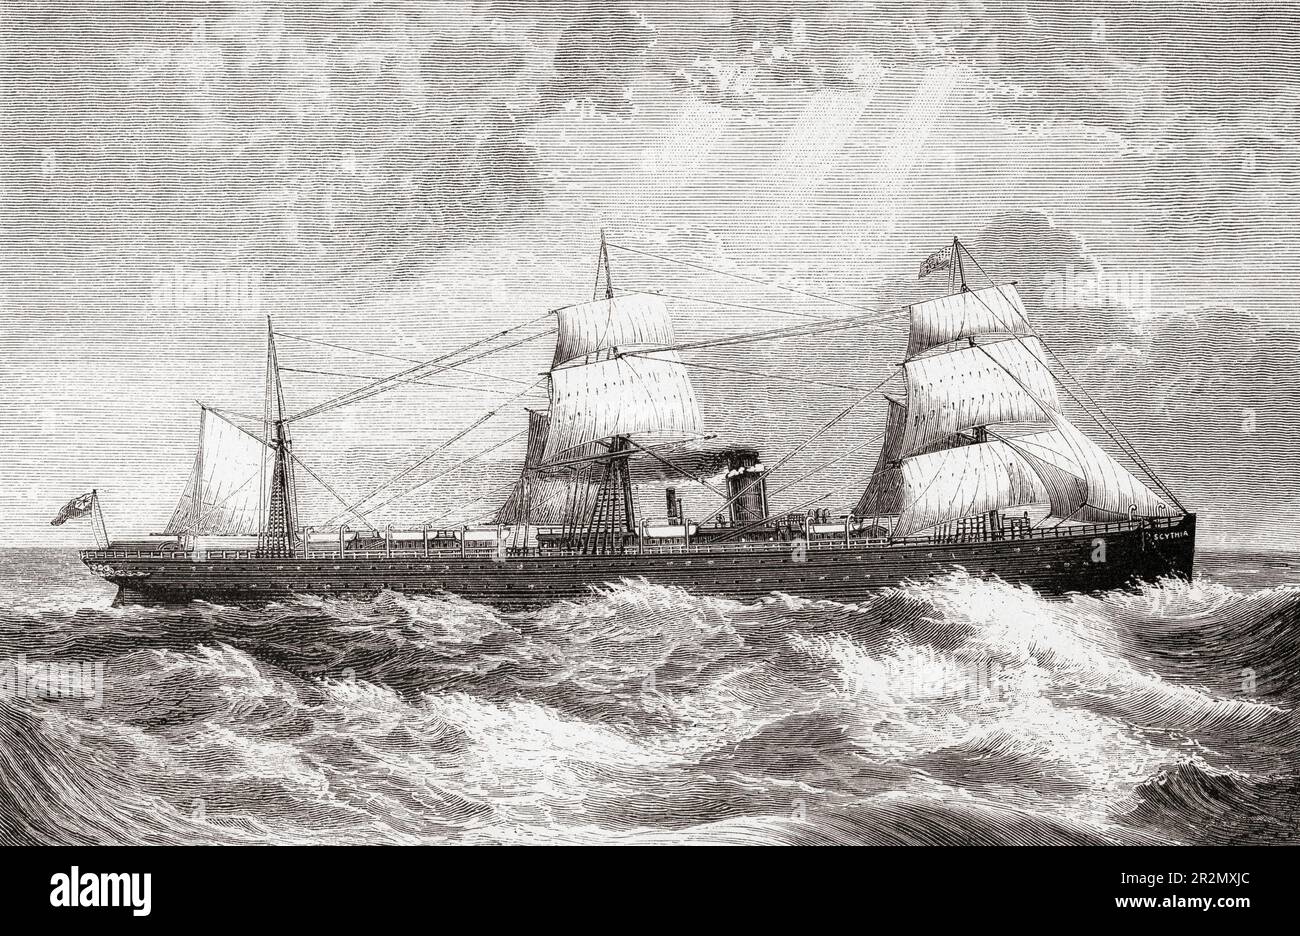 Scythia, nave a vapore del Cunard Comapny. Lanciata nel 1874, la Scythia navigò sempre sul servizio Liverpool - Boston/New York e fu finalmente discomposta in Italia nel 1899. Dall'America rivisitata: Dalla baia di New York al Golfo del Messico, pubblicato nel 1886. Foto Stock